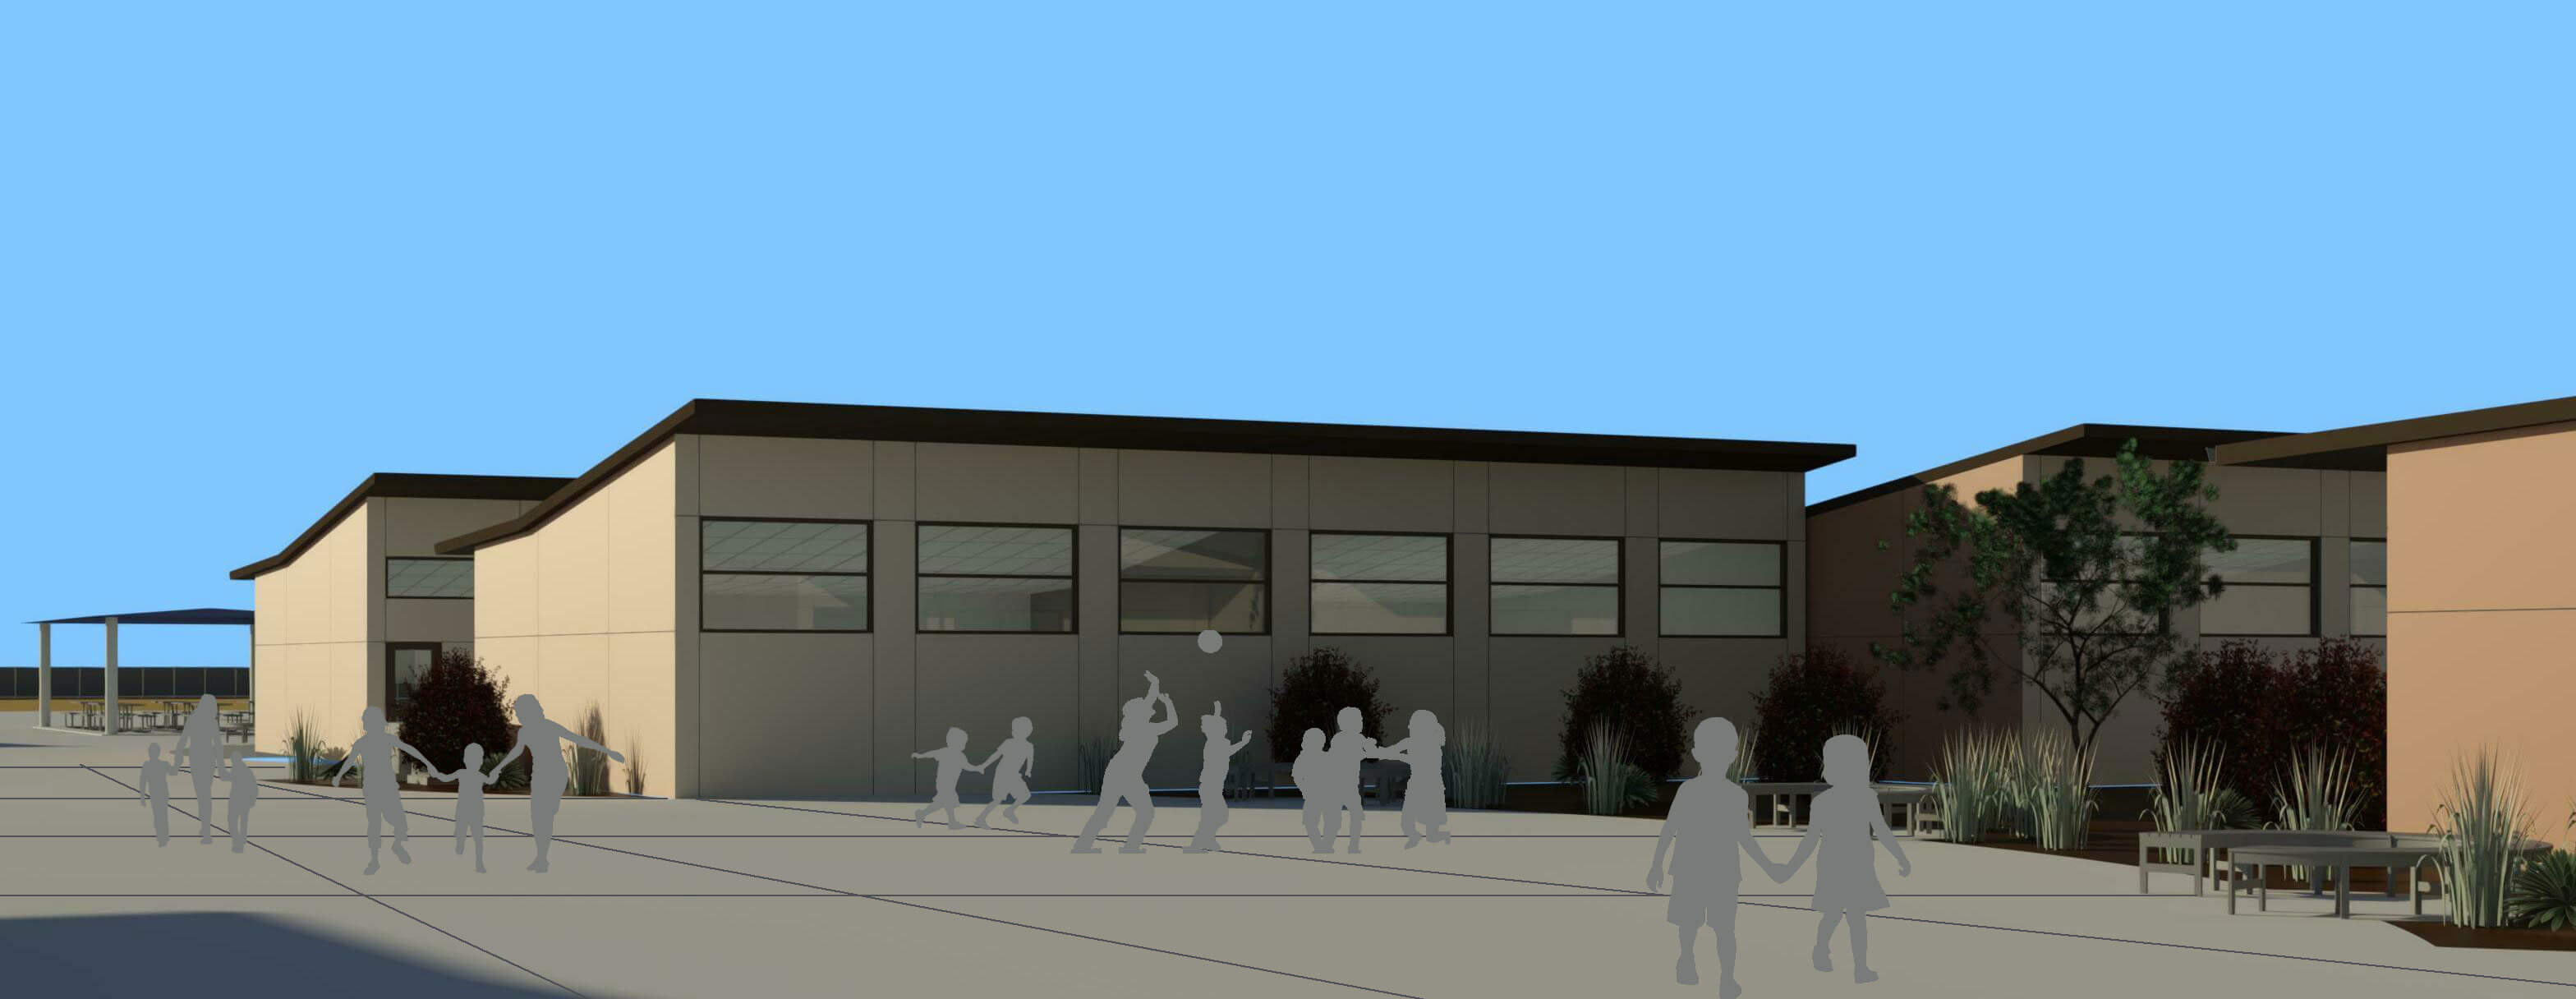 Modular School Walkway - Rendering